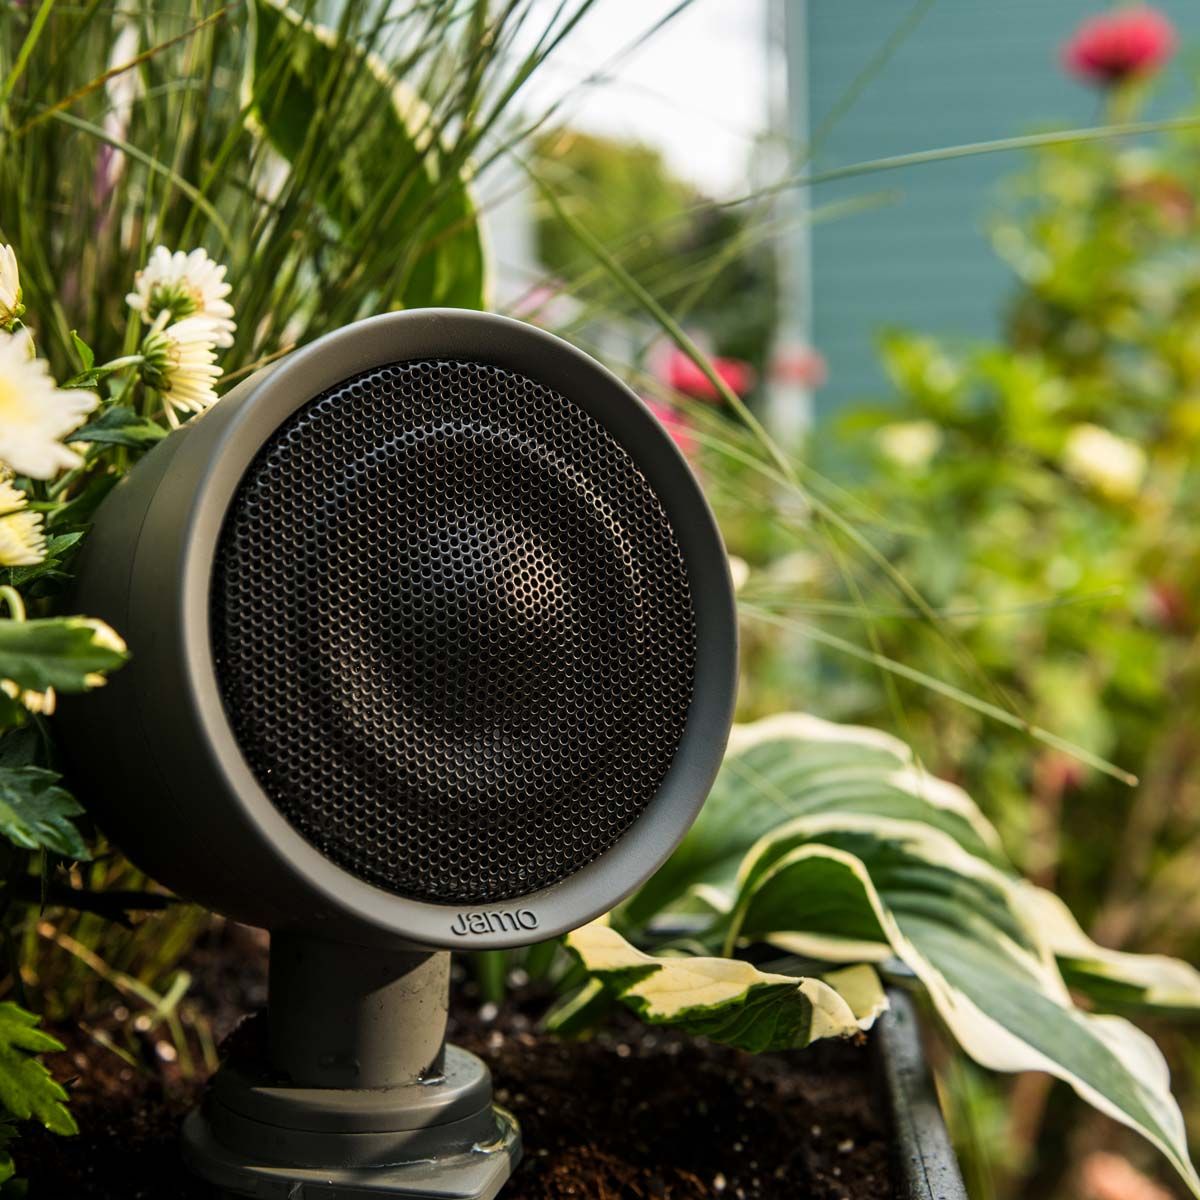 Klipsch speaker in garden outdoors